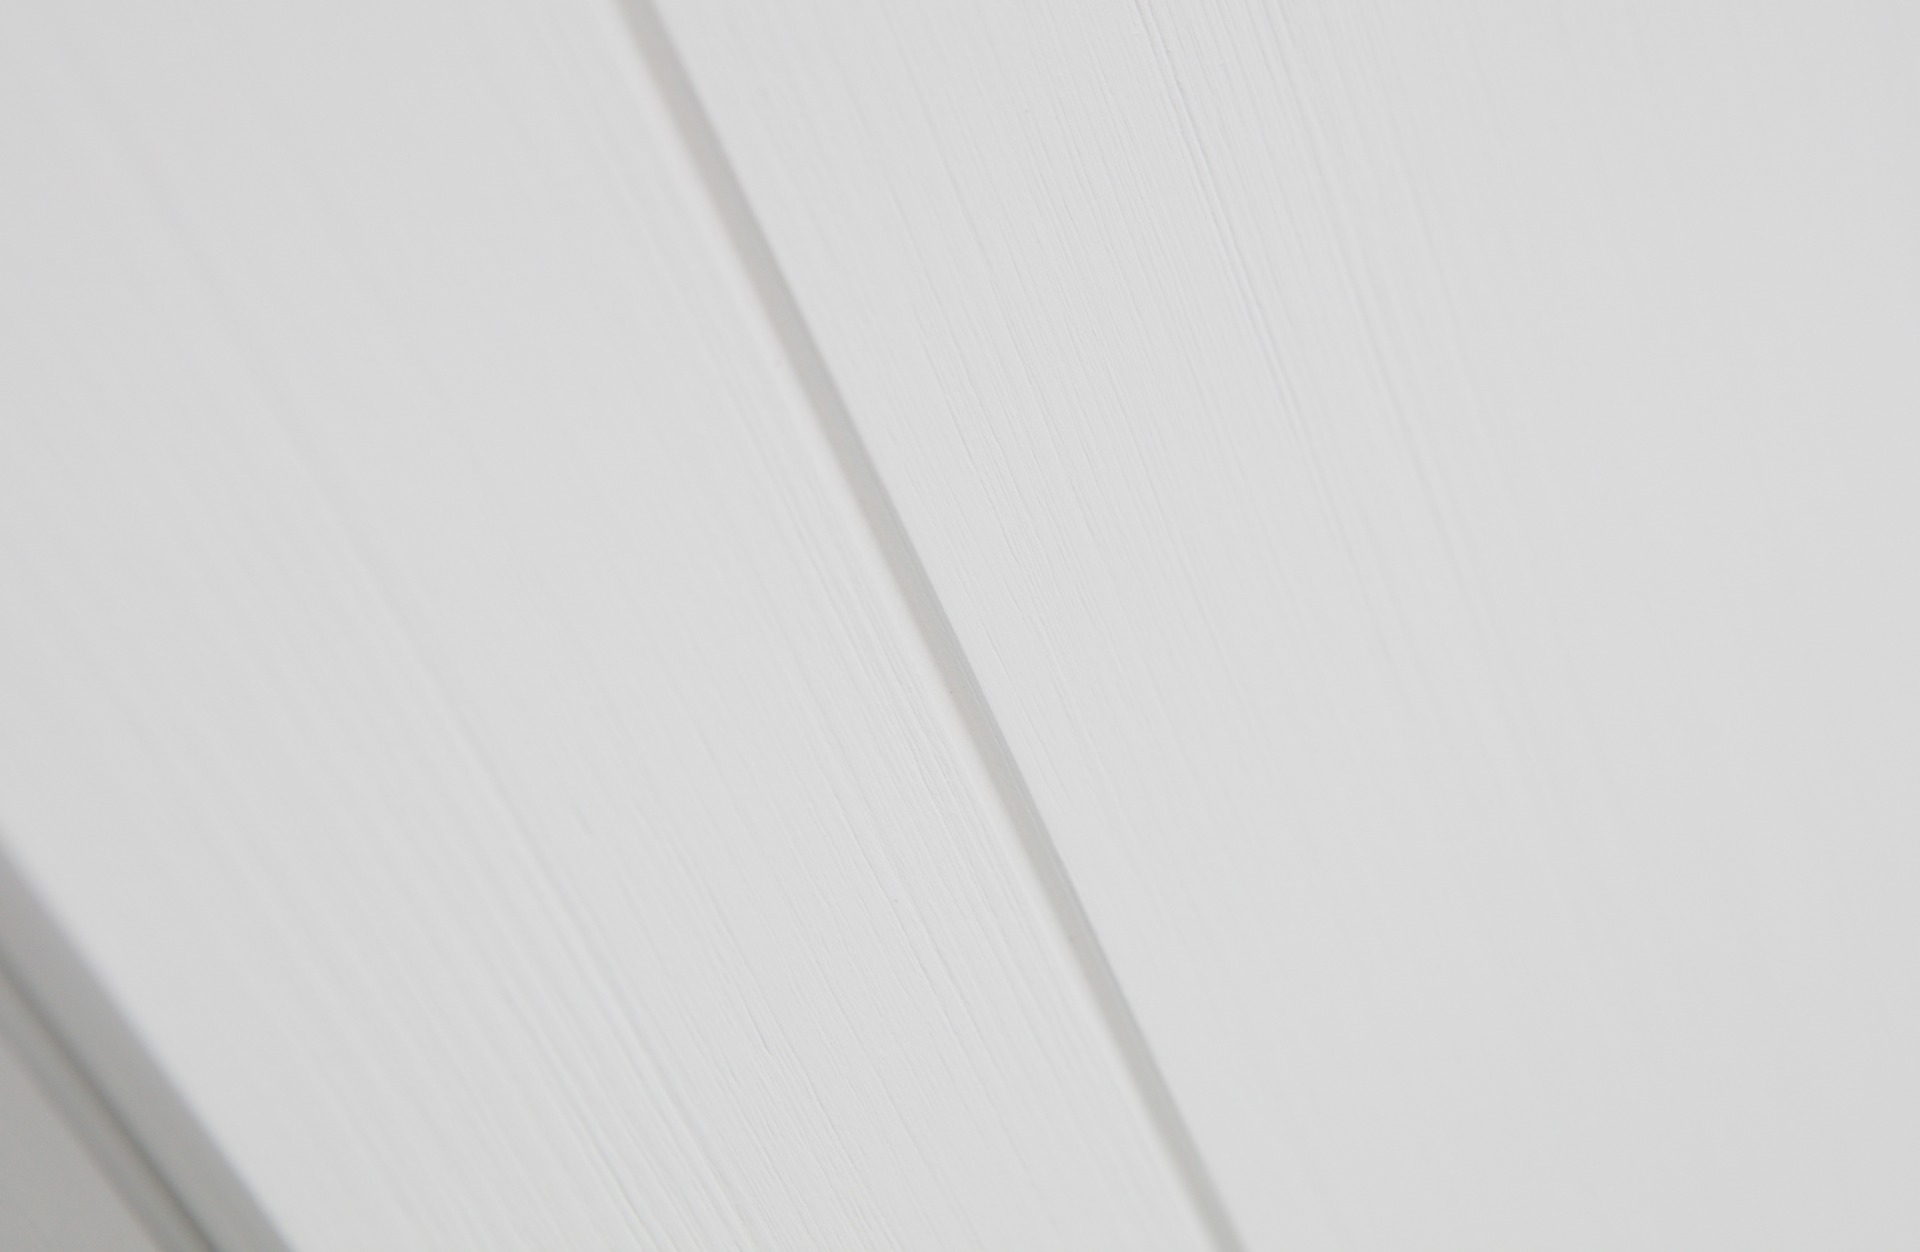 Der Kleiderschrank Ties wurde aus Kiefernholz gefertigt. Sein weißer Farbton unterstreicht sein modernes aber auch schlichtes Design.